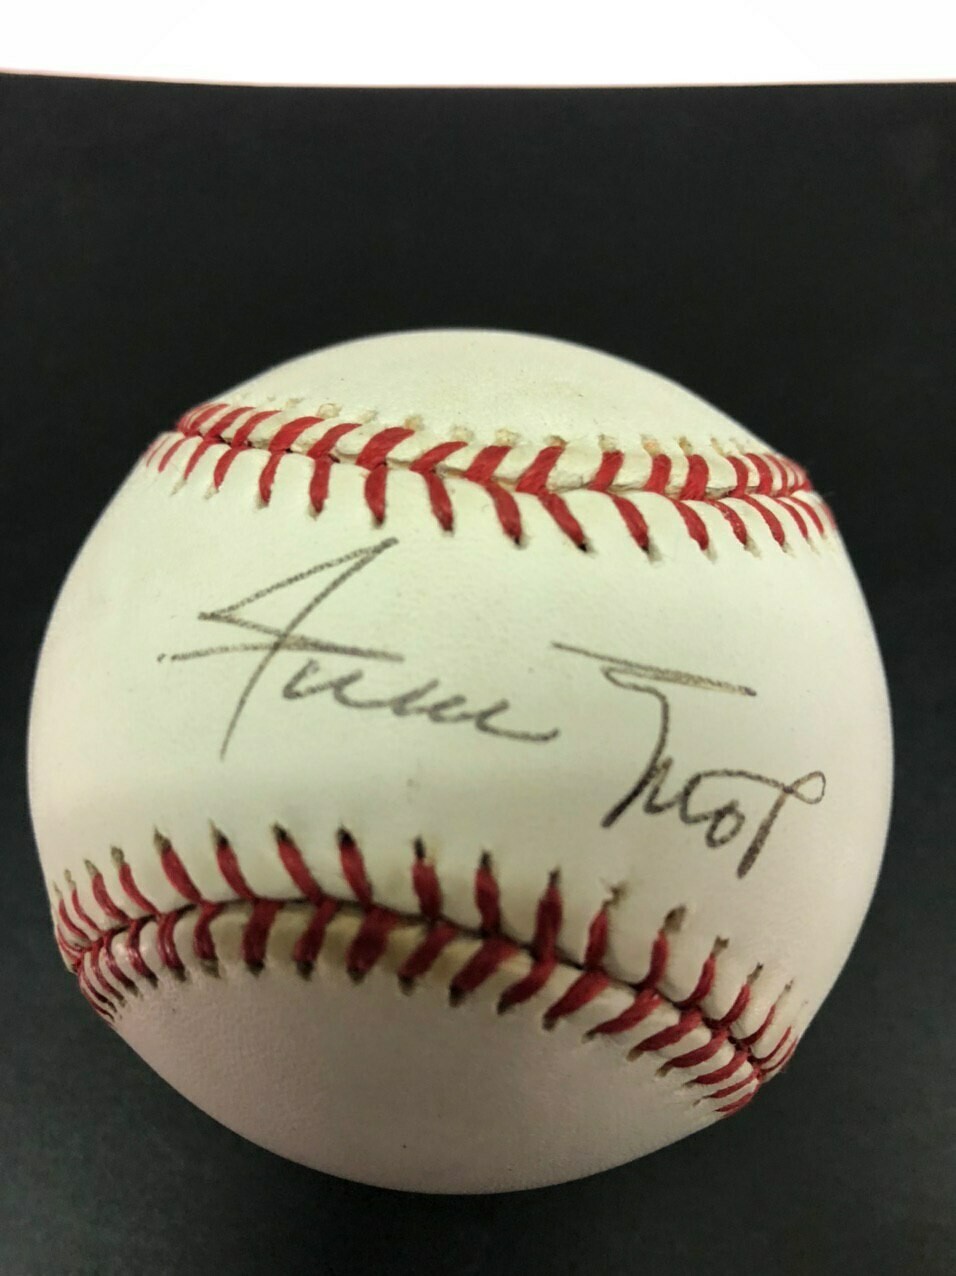 Willie Mays Signed Baseball - Steiner Cert.